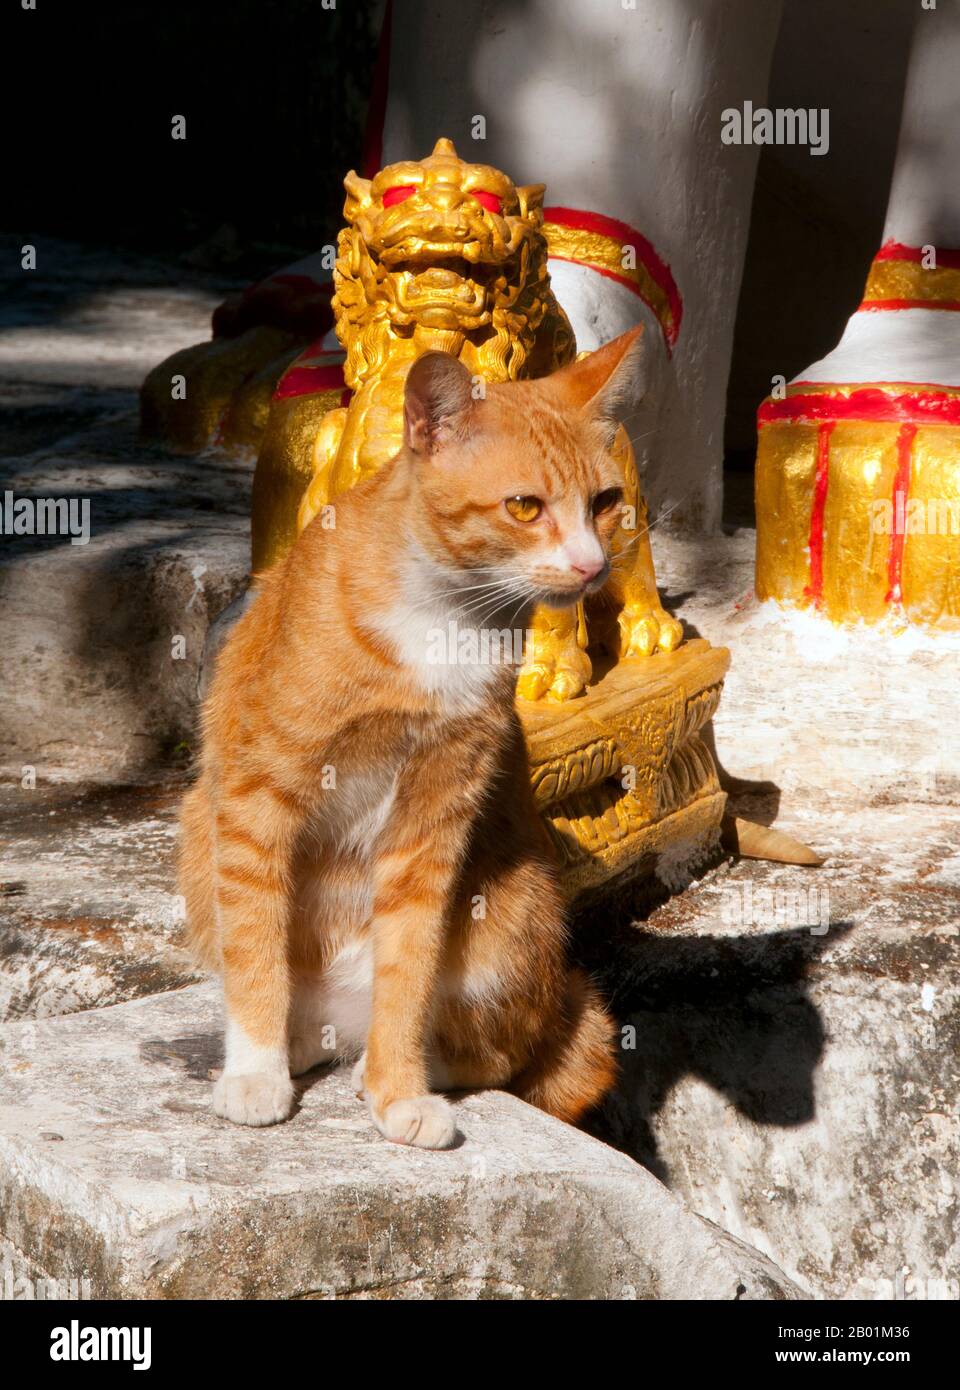 Thaïlande : Chat du temple à Wat Buppharam, Chiang Mai, nord de la Thaïlande. Wat Buppharam a été construit en 1497. En 1797, Chao (prince) Kawila, un descendant de la dynastie Tipchak, a commencé sa circumambulation rituelle de Chiang Mai à partir de ce moment. Ce rituel était nécessaire pour réoccuper formellement la ville après deux siècles de domination birmane. Chiang Mai est souvent appelée la «Rose du Nord» de Thaïlande, et est la deuxième ville du pays et une destination touristique populaire en raison principalement de ses paysages montagneux, des tribus montagneuses colorées et de leurs artisanat. Banque D'Images